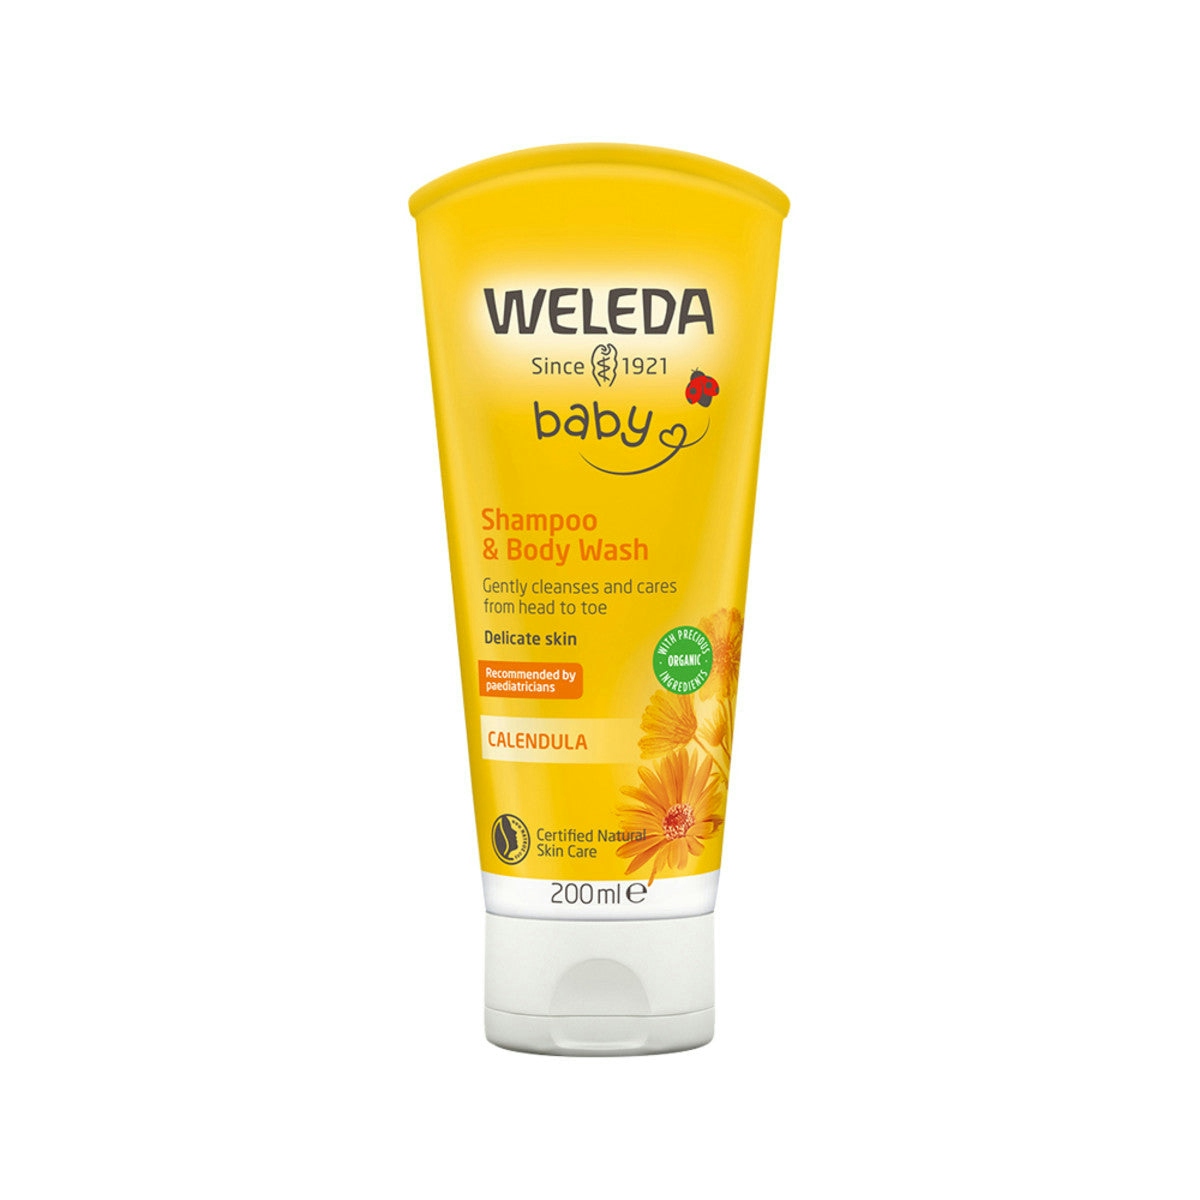 image of Weleda Baby Shampoo and Body Wash Calendula 200ml on white background